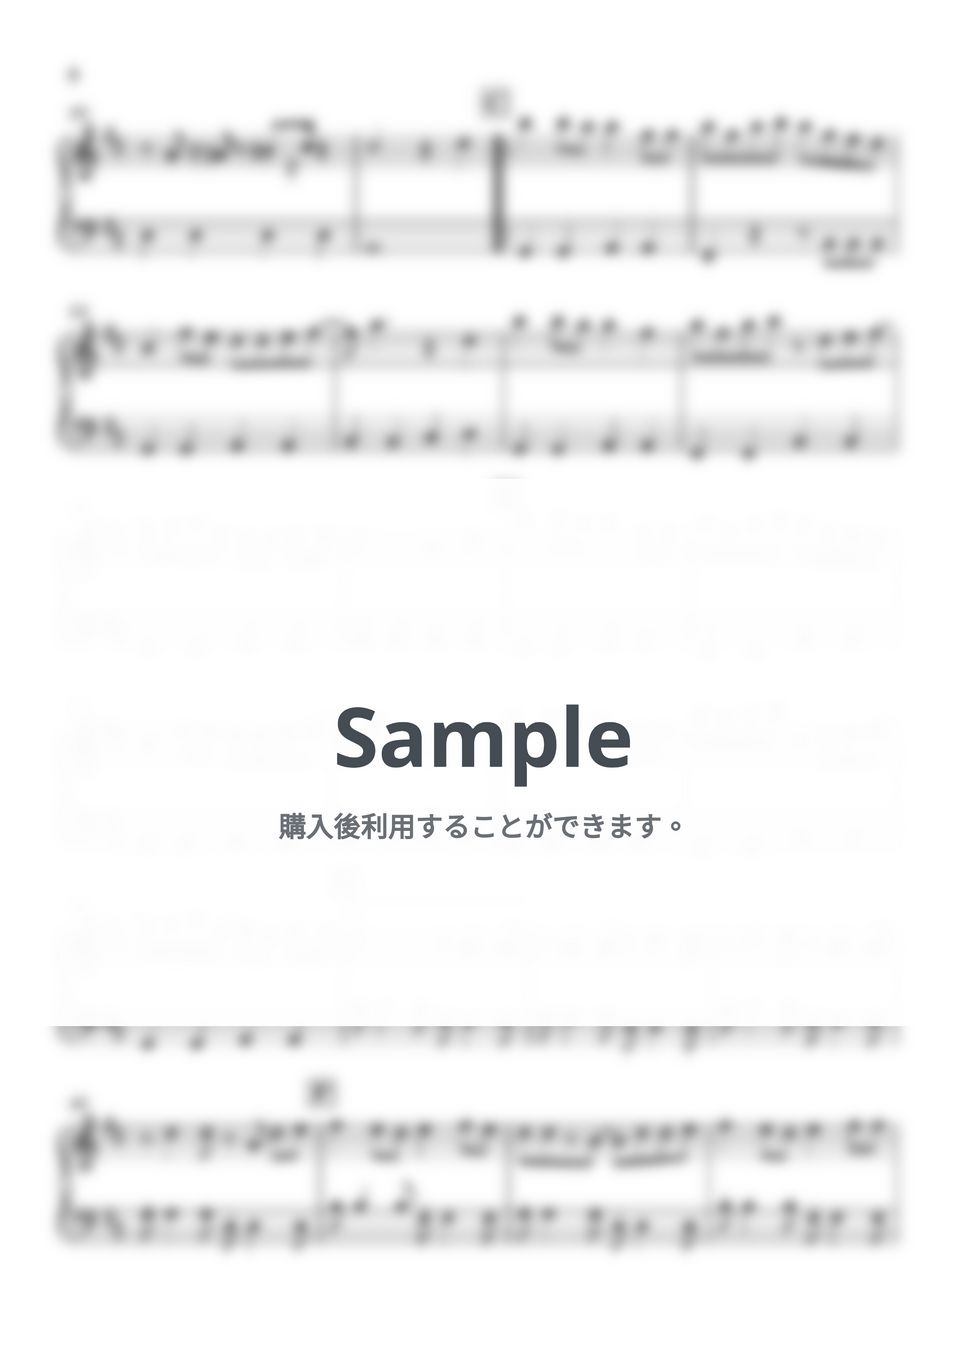 ヨルシカ - 晴る (葬送のフリーレン) by Piano Lovers. jp